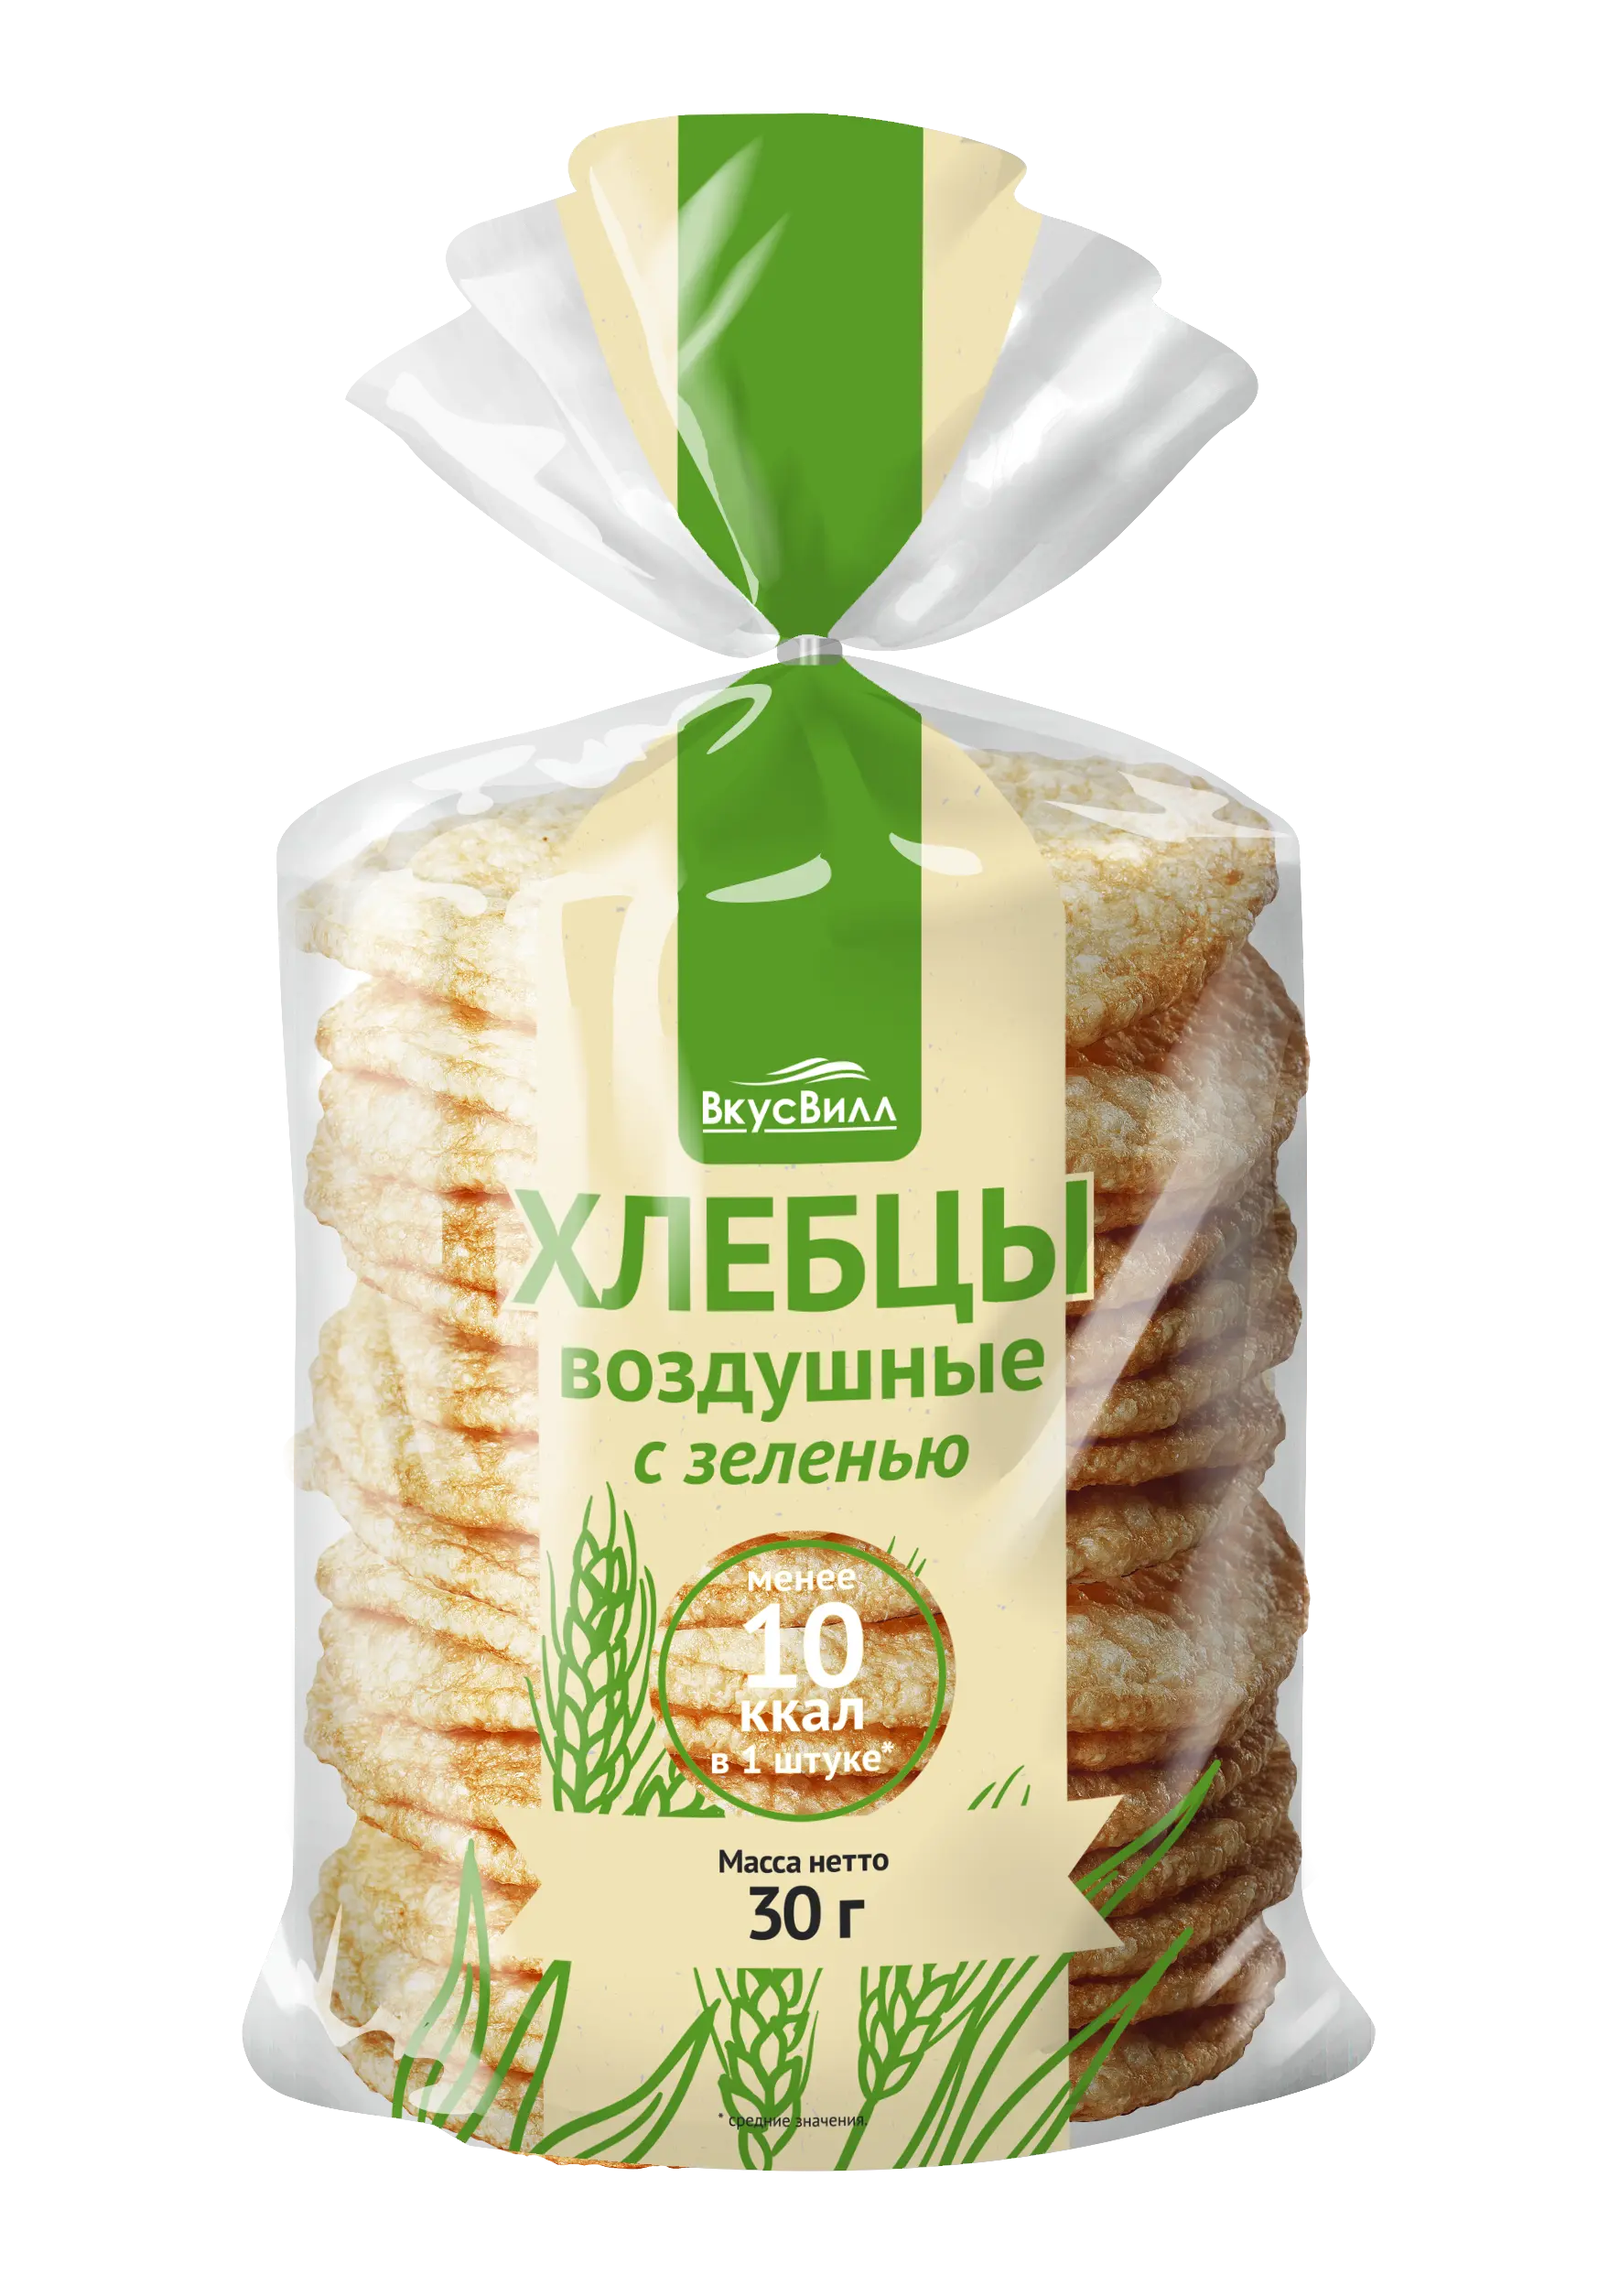 ВКУСВИЛЛ хлебцы пшеничные с зеленью 30г N1 (Арт-Ам, РФ)